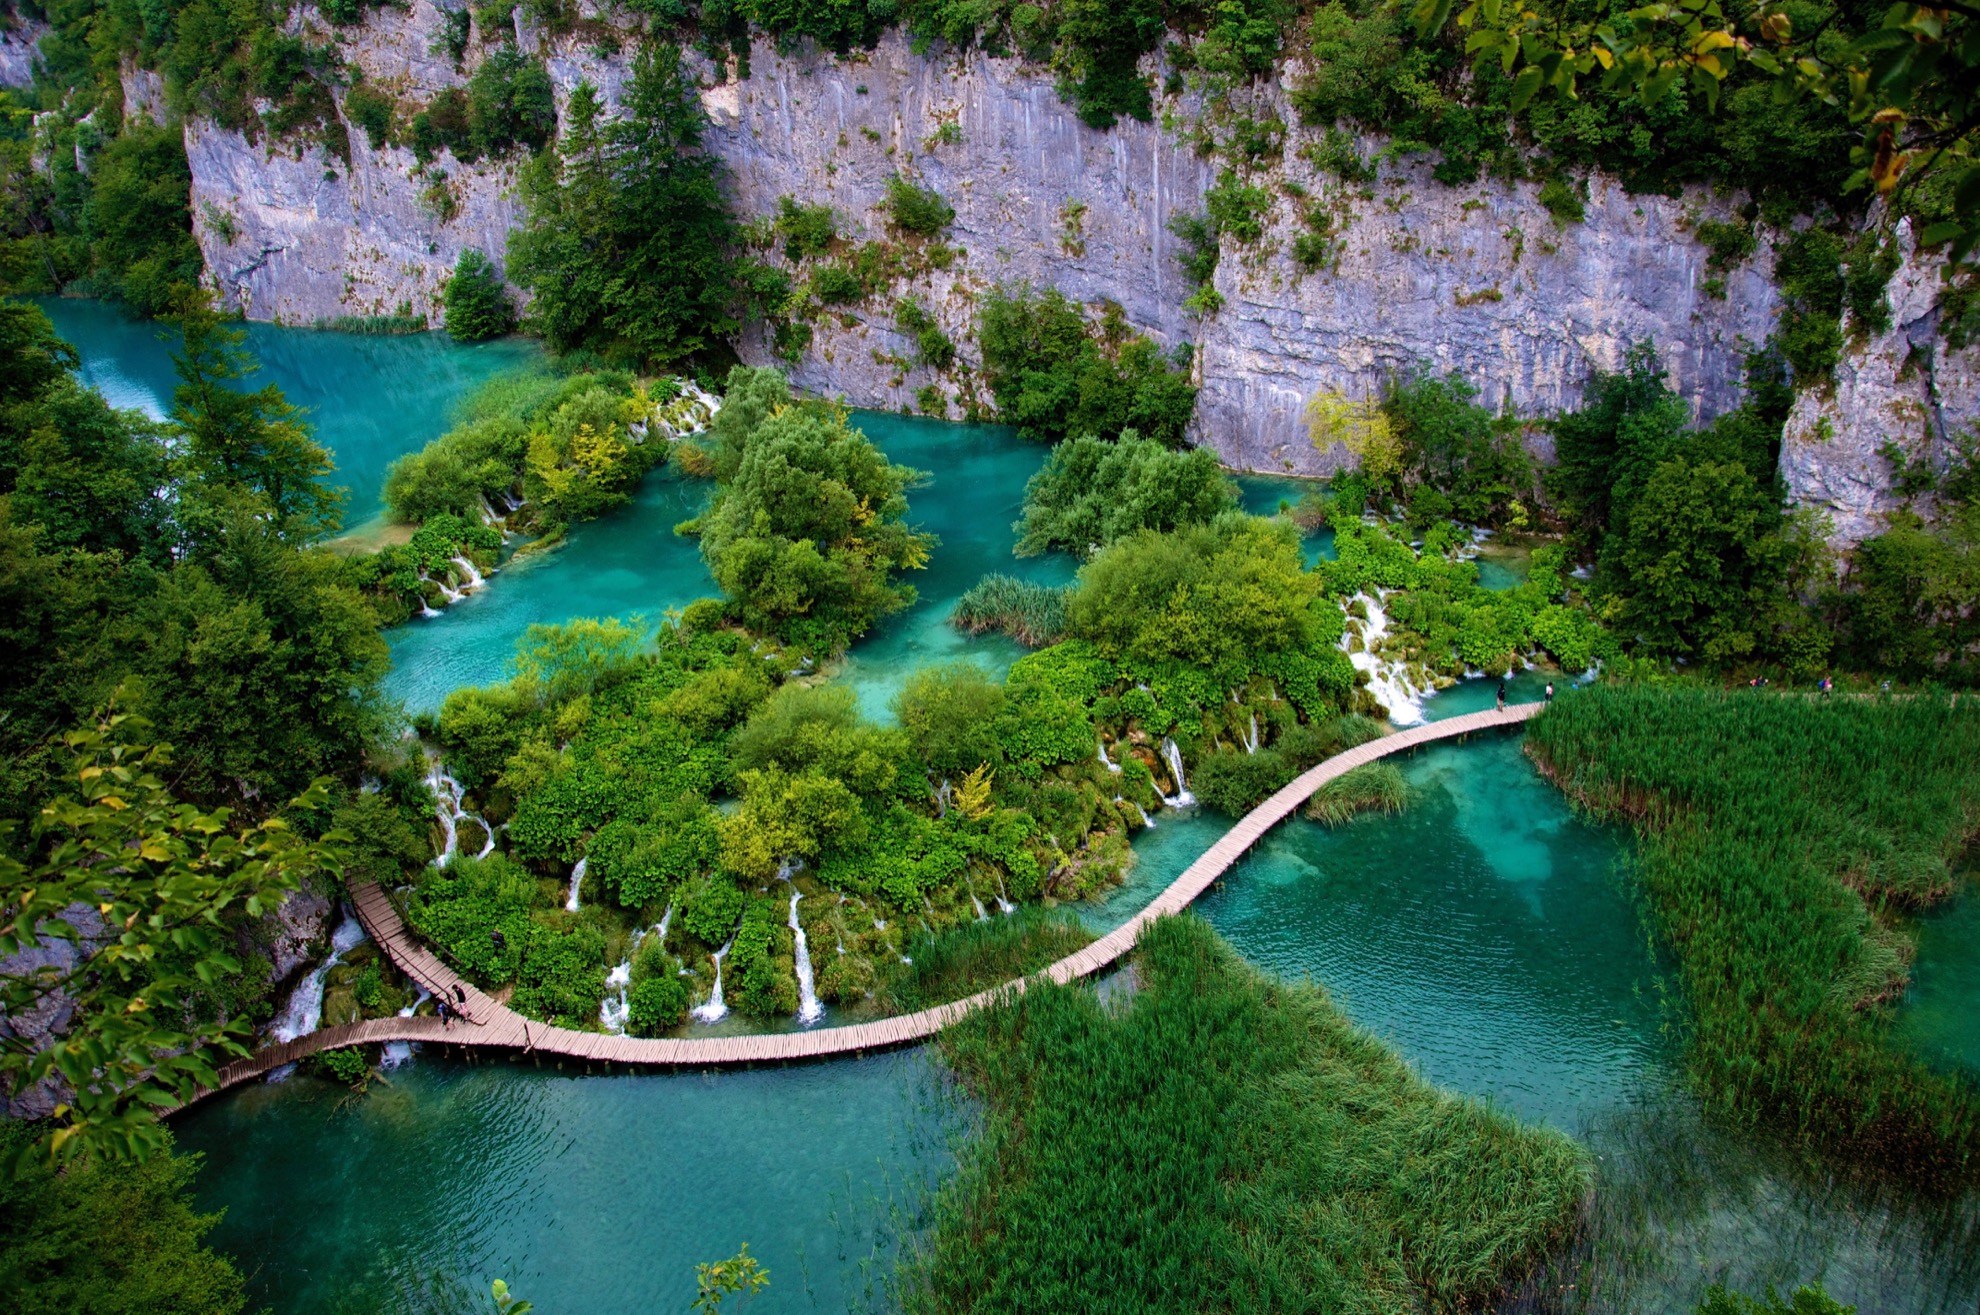 Cascadas se unen a 16 lagos naturales en el impresionante Parque Nacional Plitvice Lakes de Croacia - 15